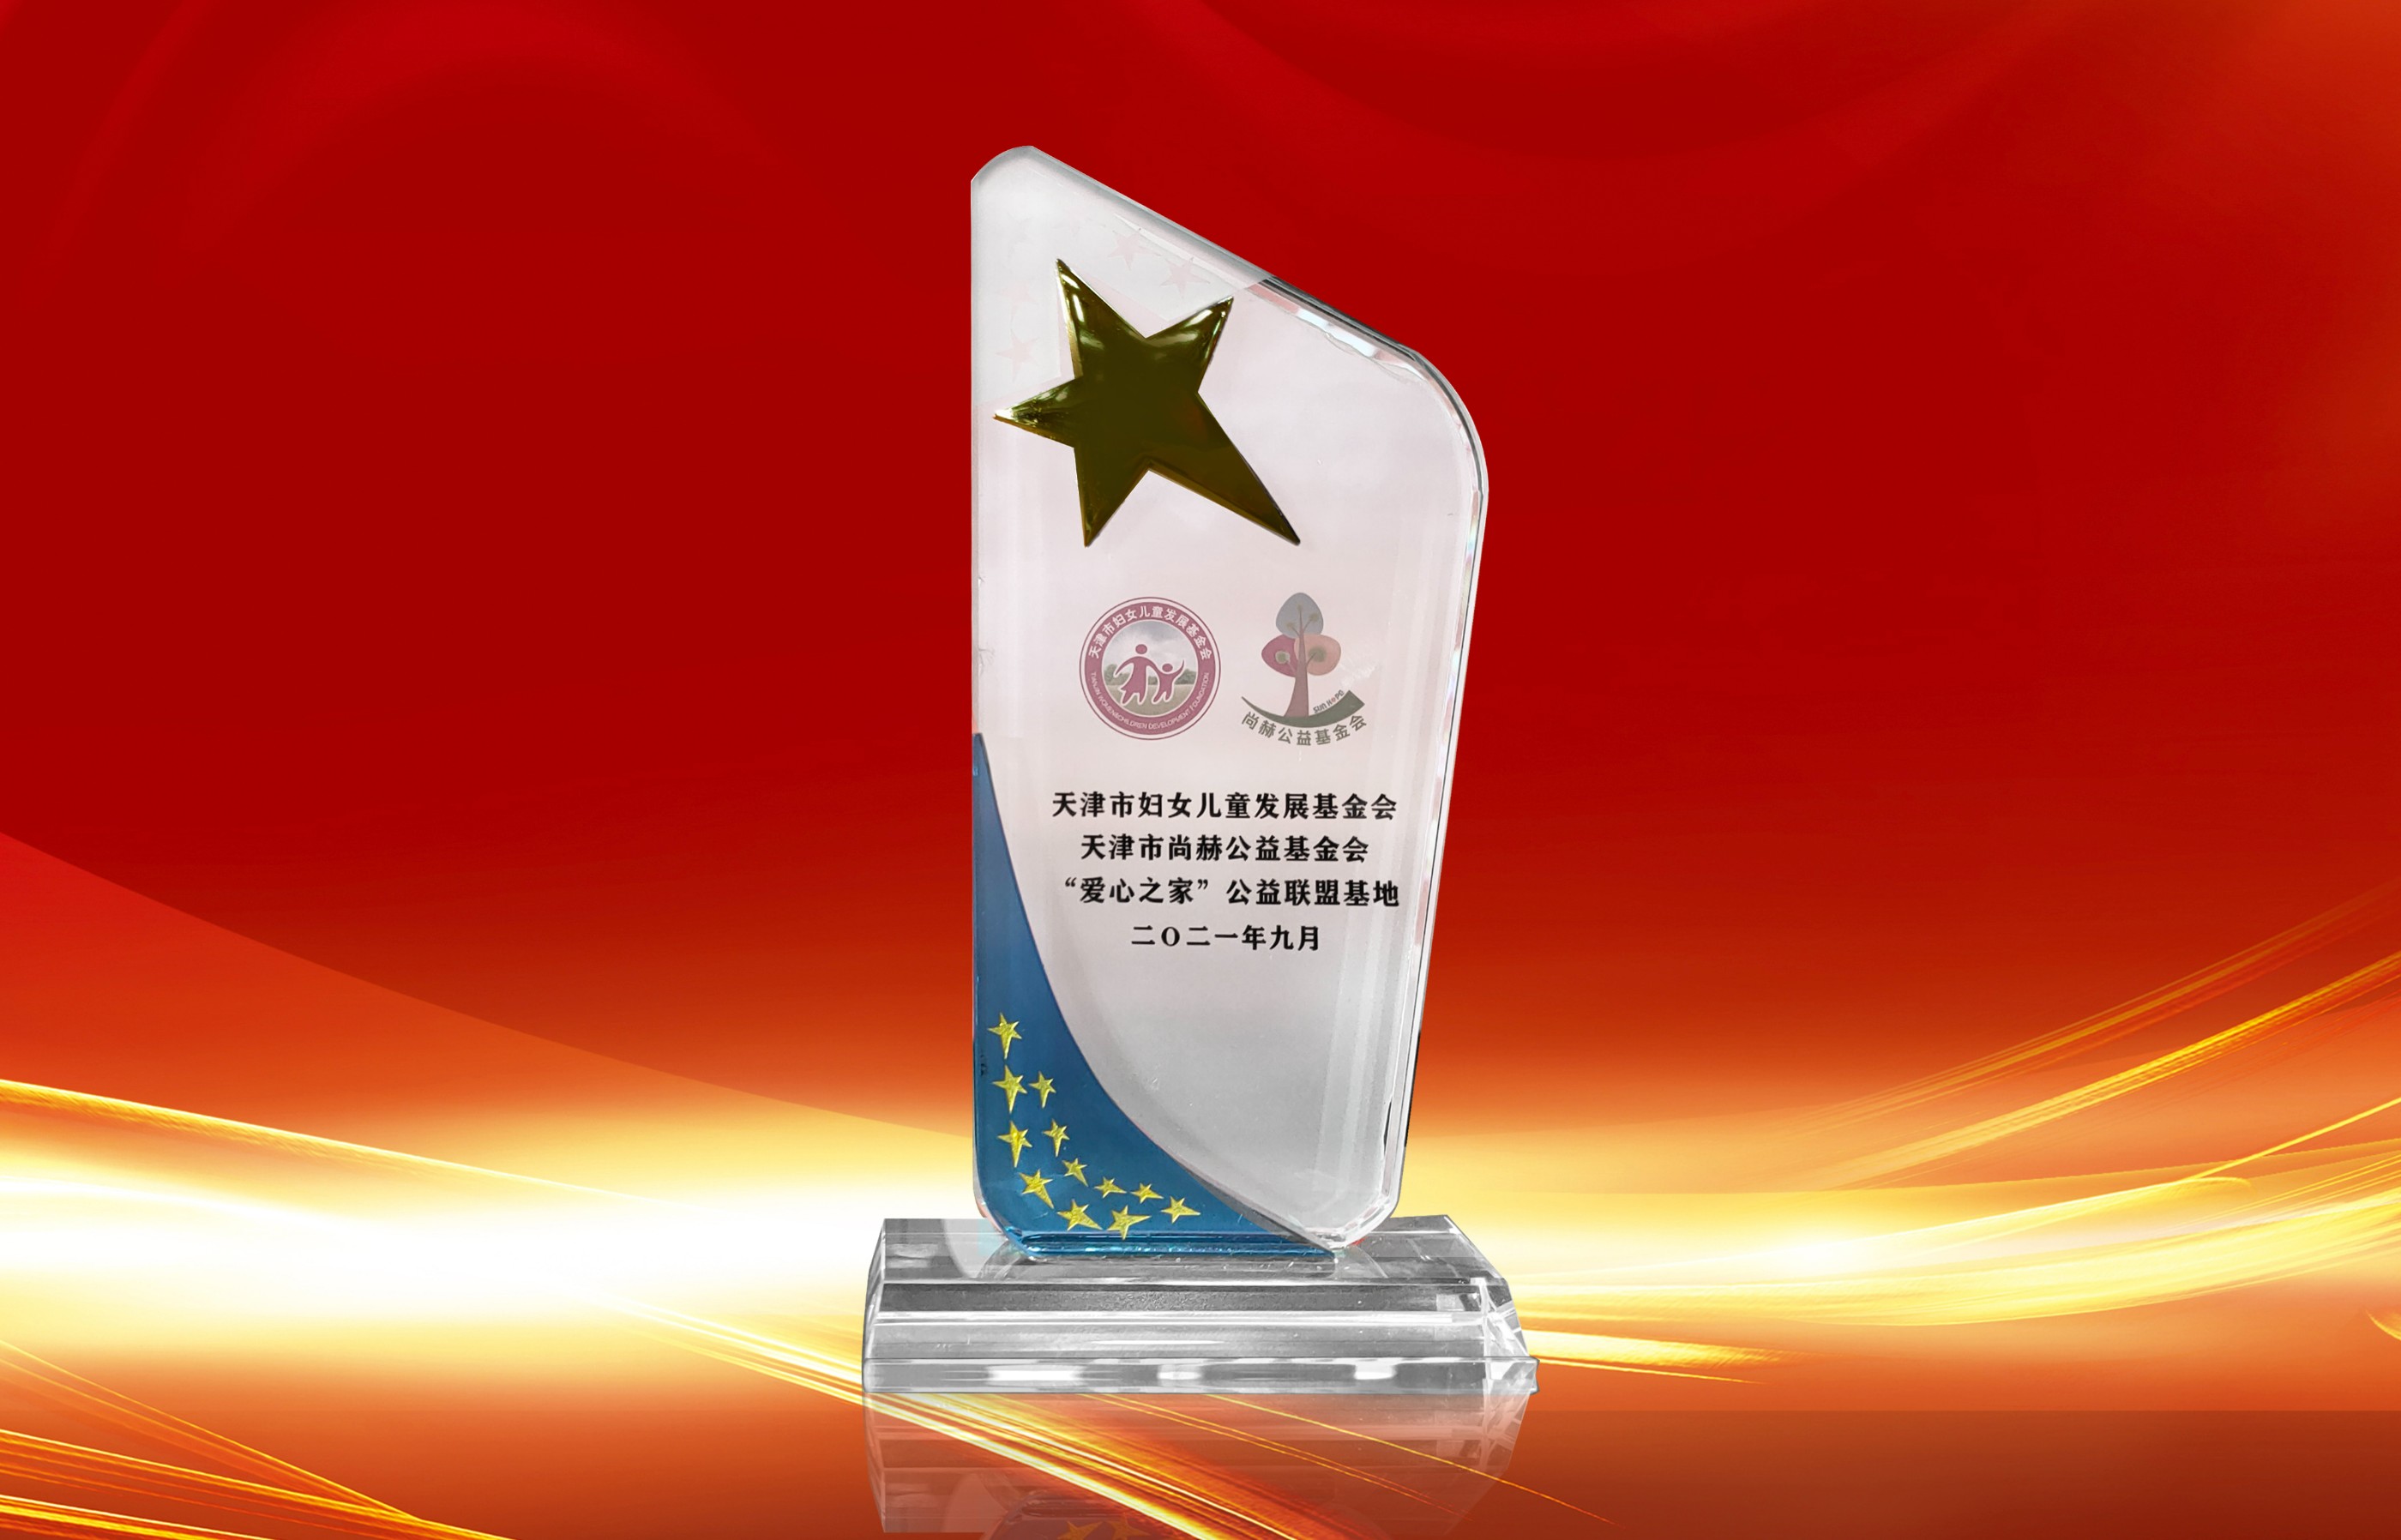 2021年9月-尊龙体育国际(中国)科技有限公司荣获-天津市妇女联合会-“爱心之家”公益联盟基地奖杯